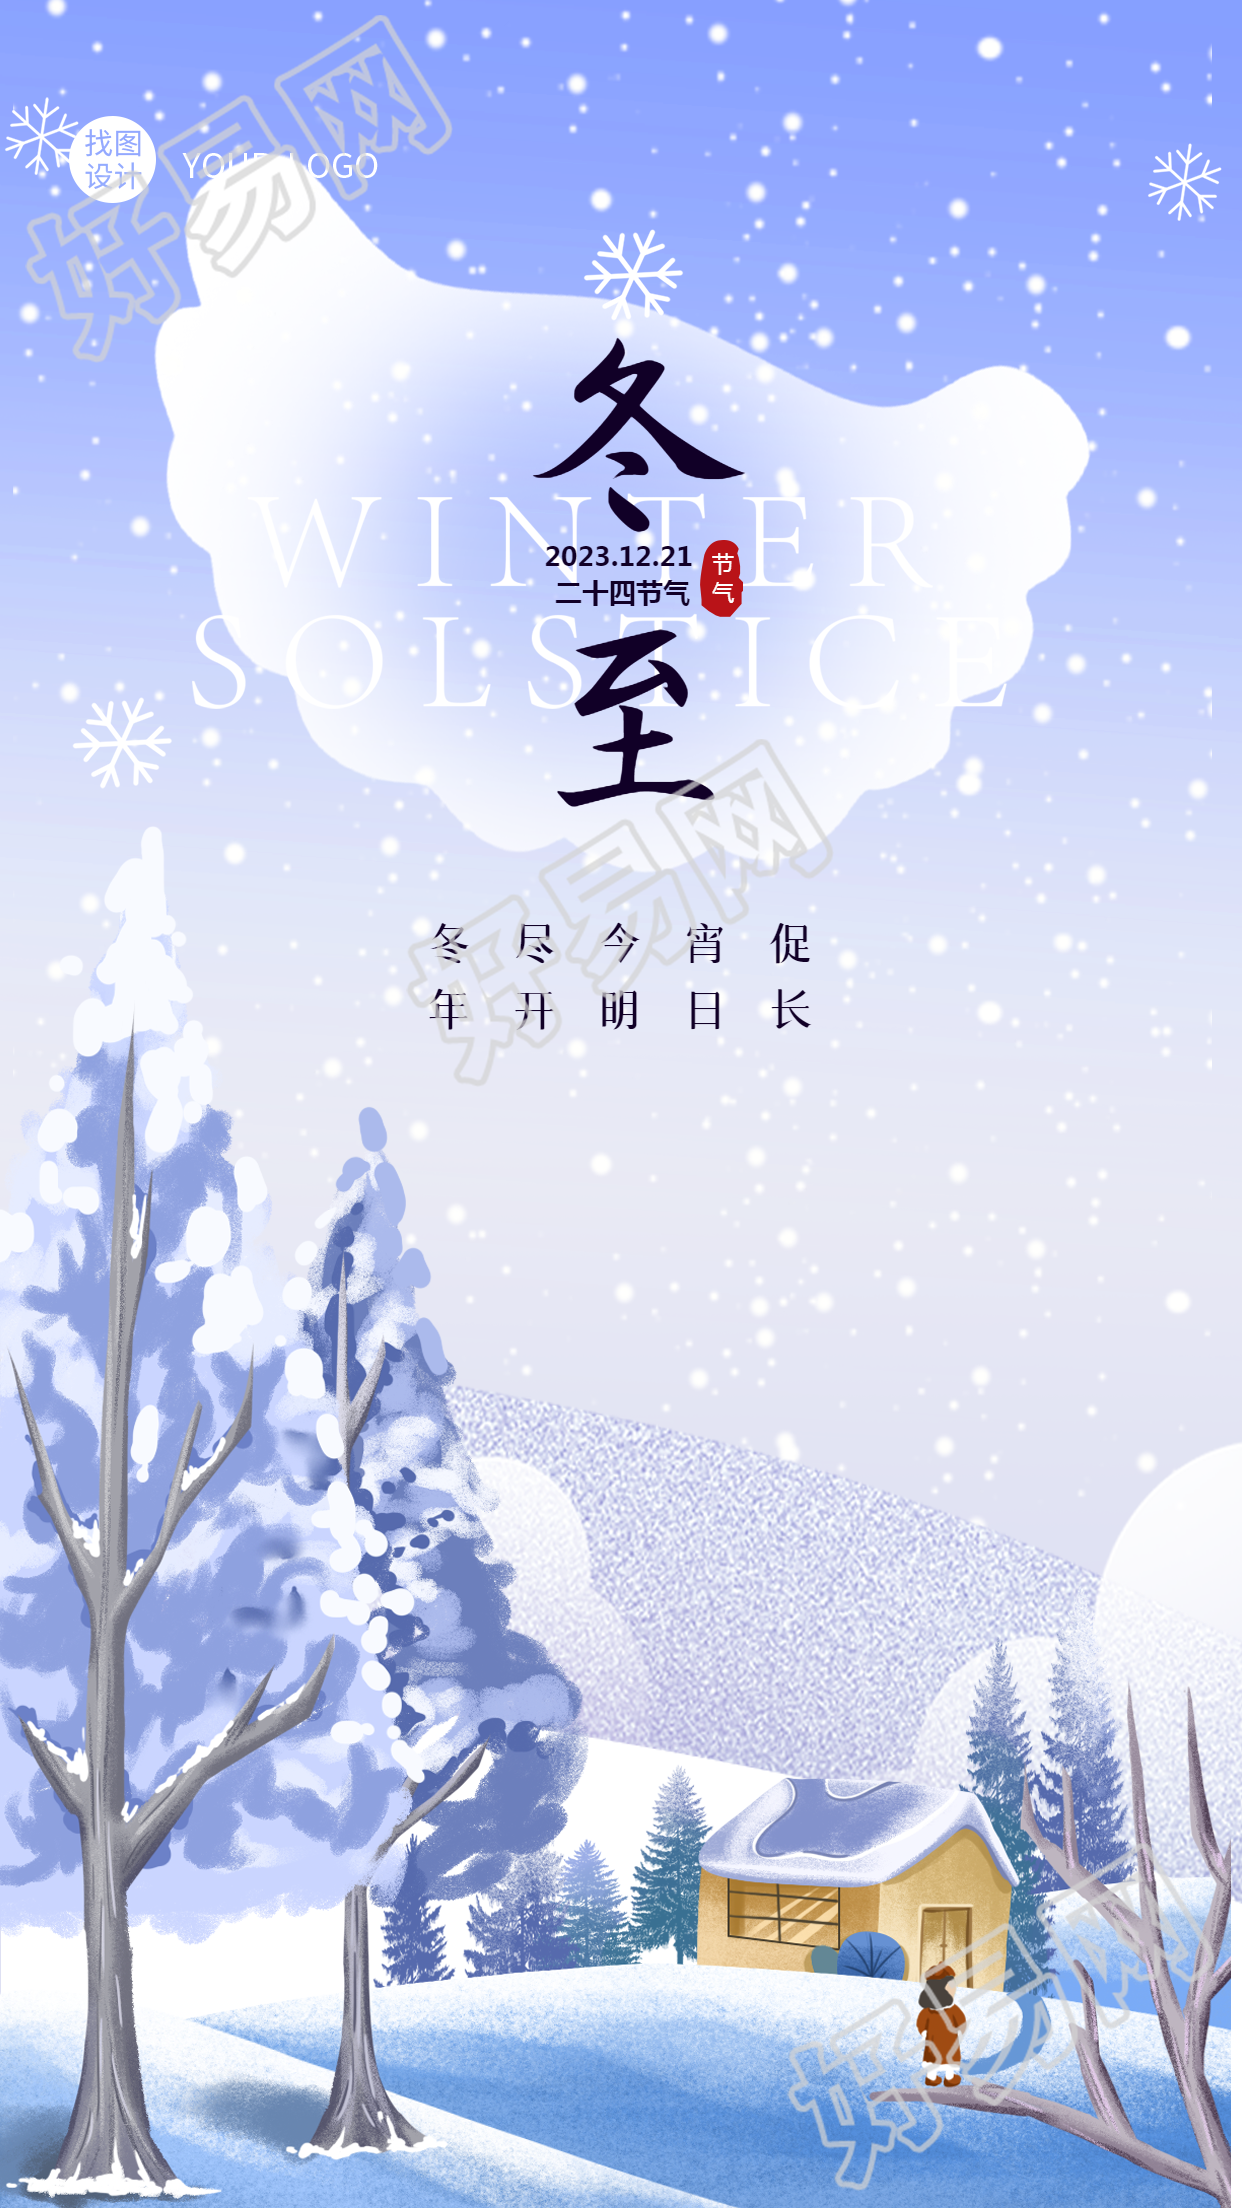 可爱卡通风格的冬至节手机海报让你感受雪景的魅力